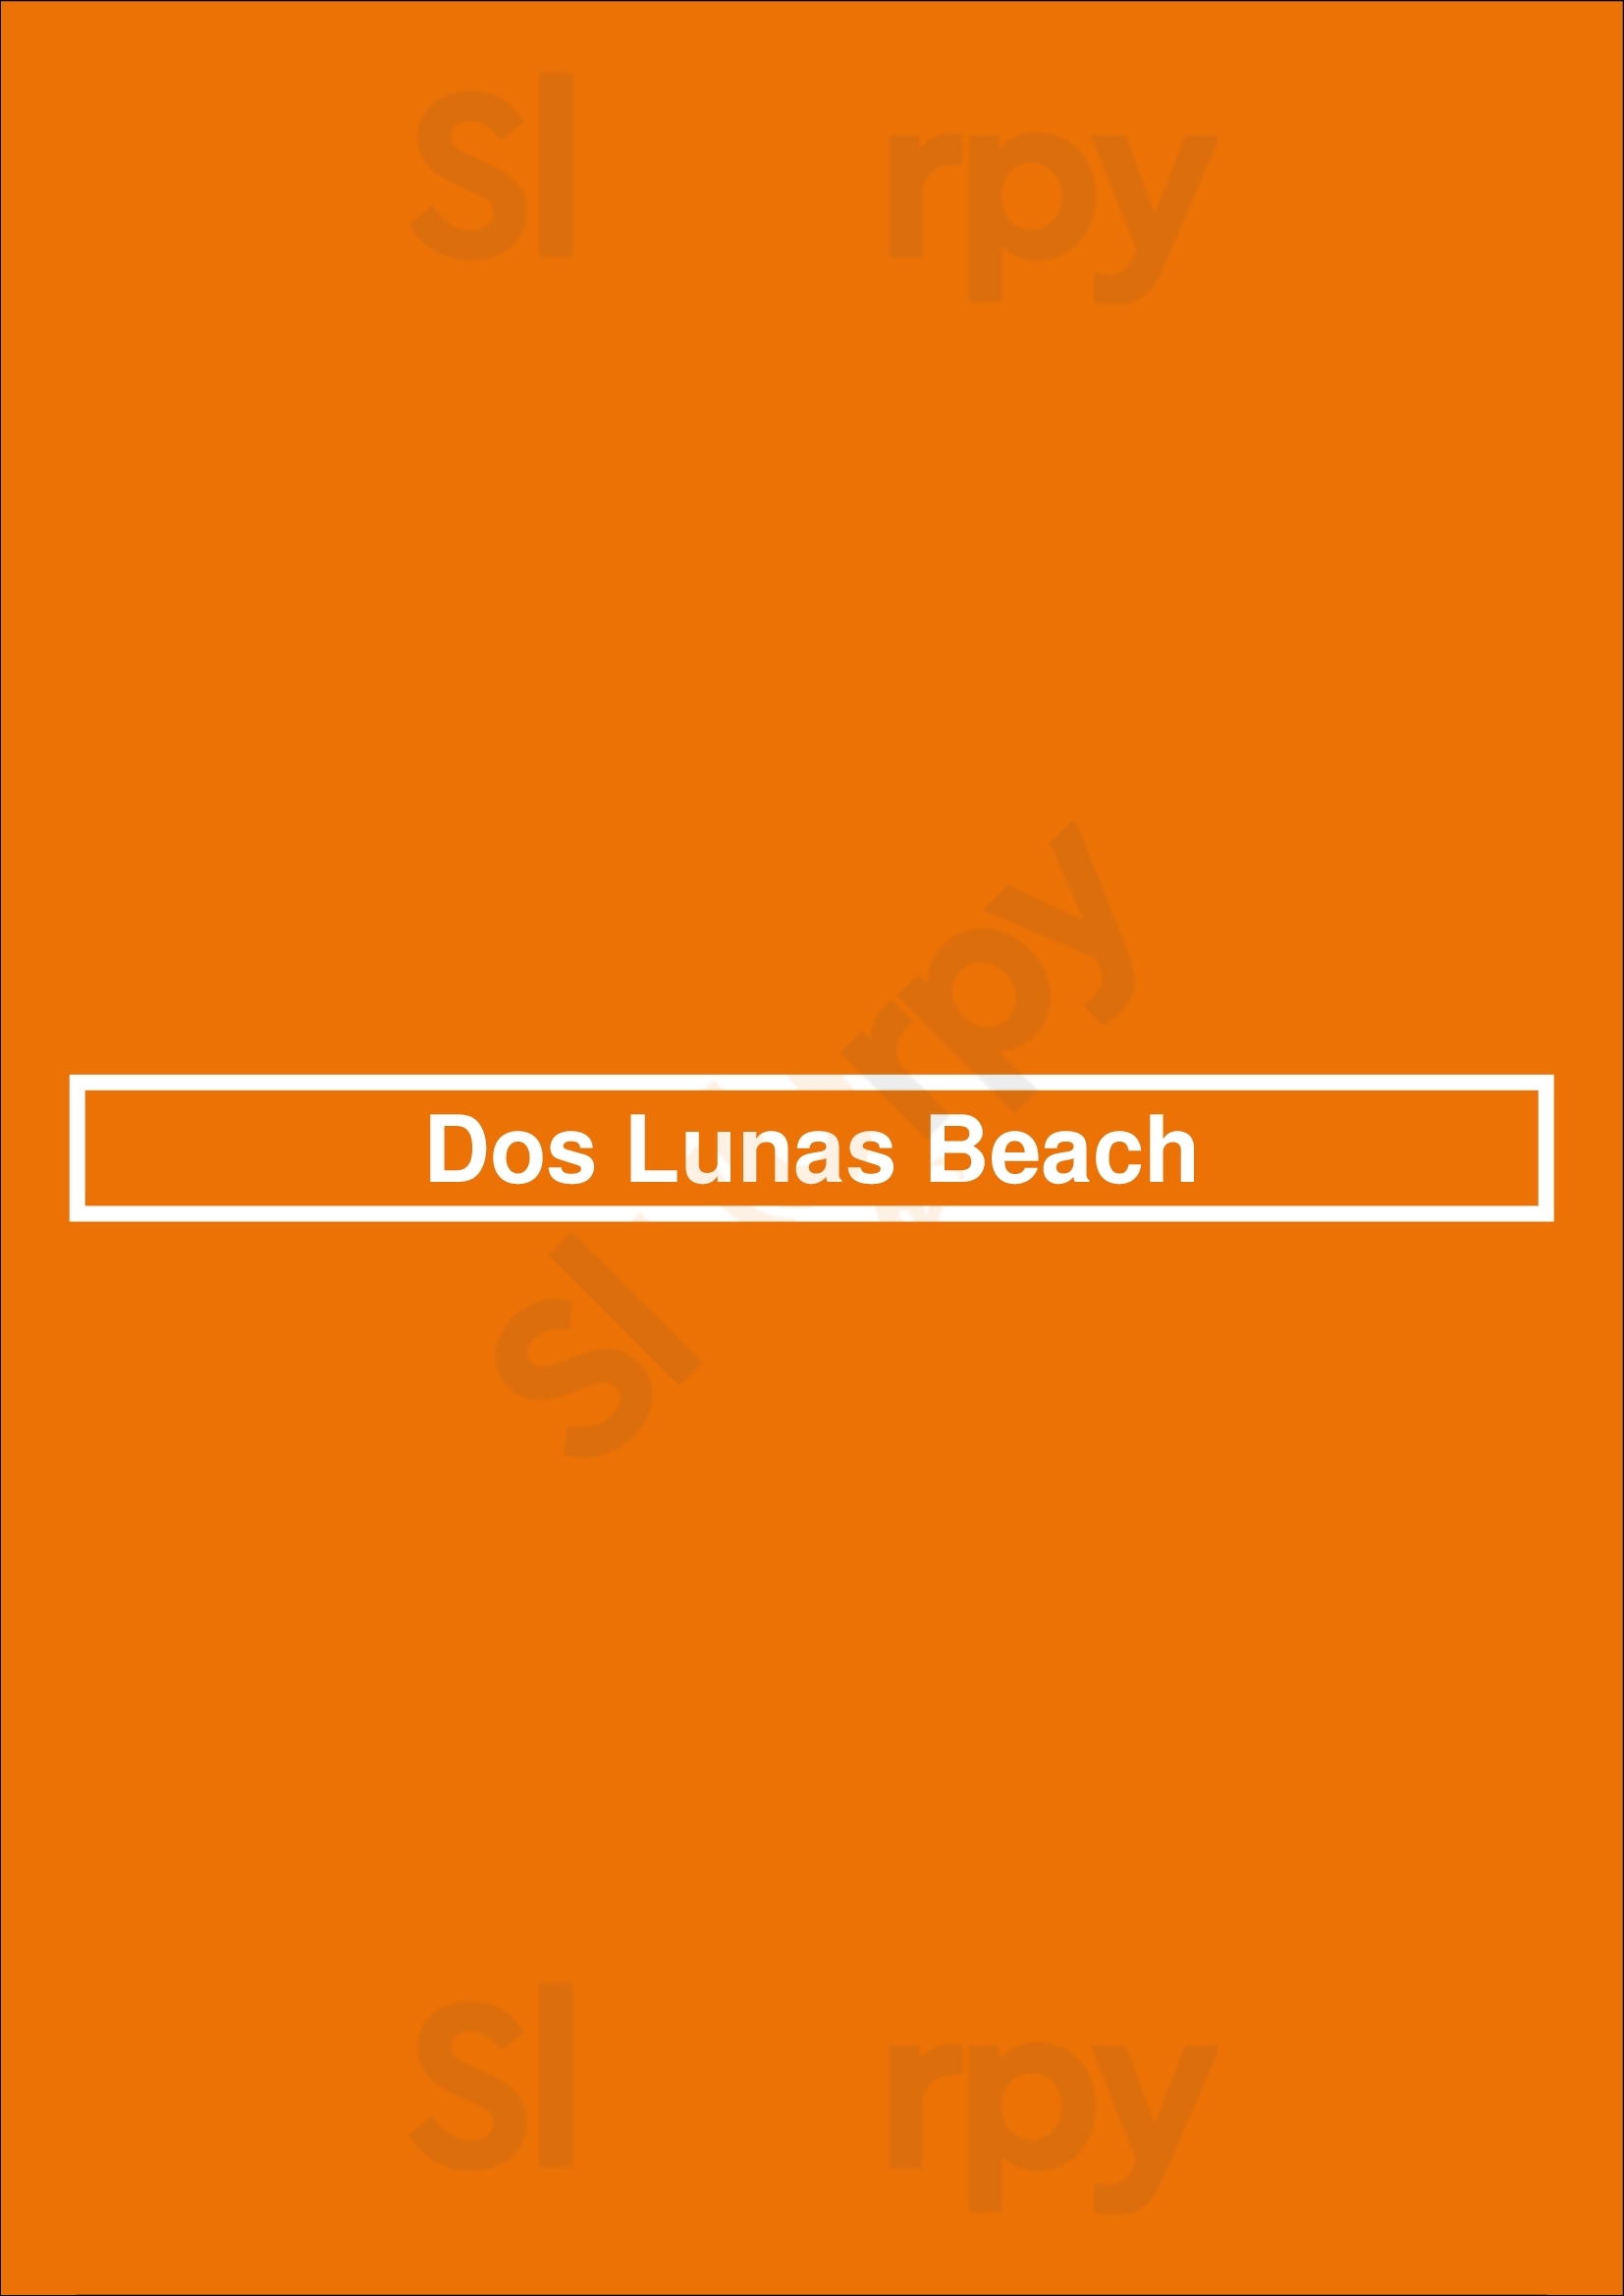 Dos Lunas Beach Valencia Menu - 1